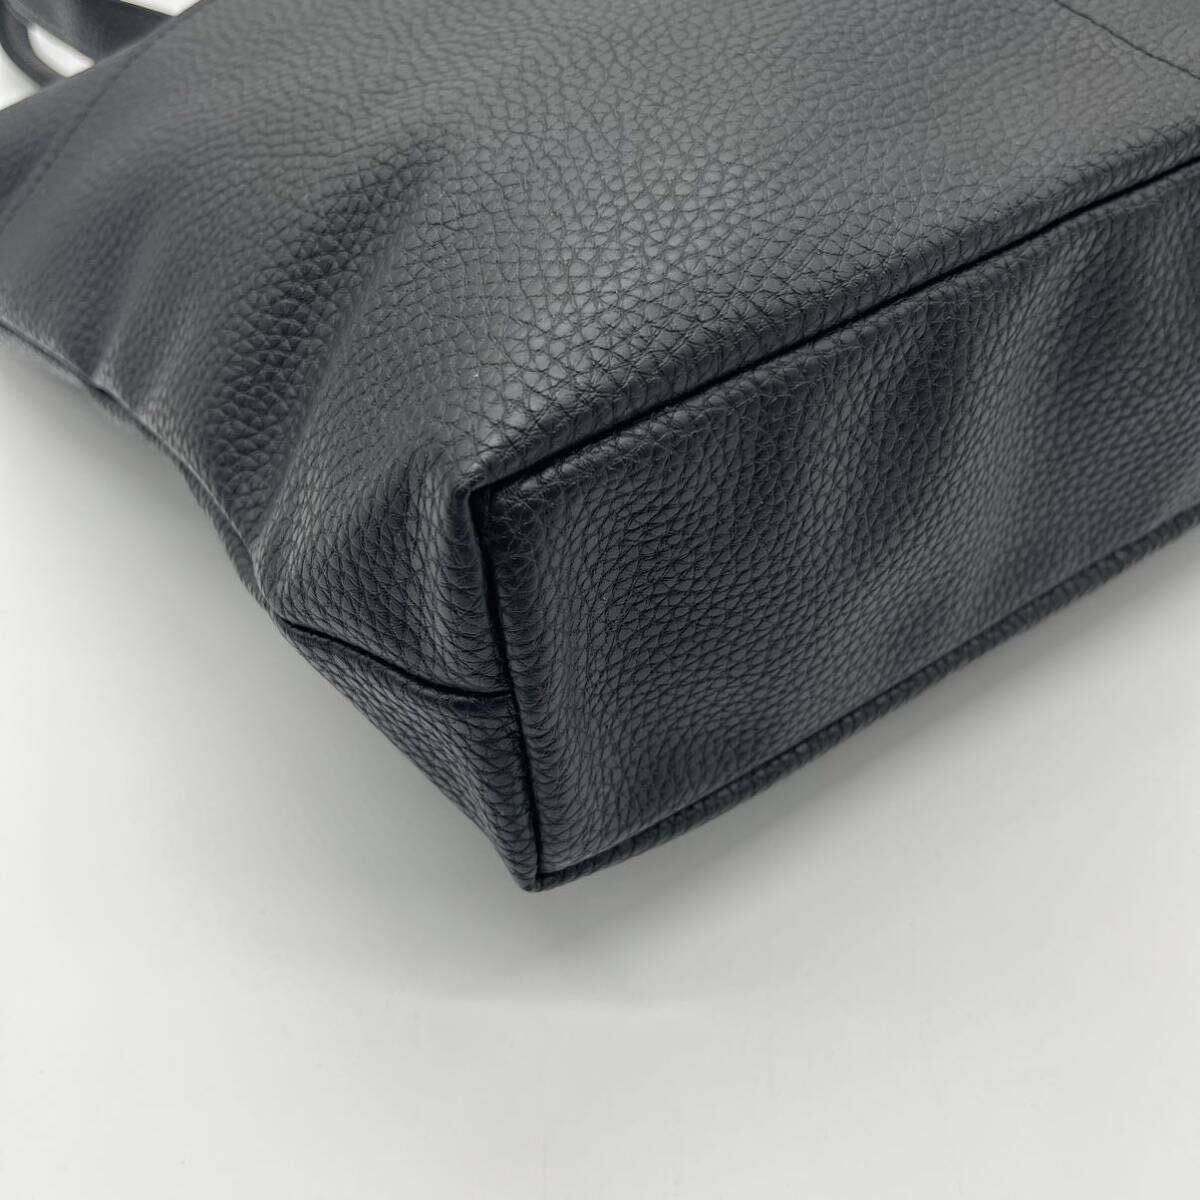 BEAMS Beams все кожа большая сумка вертикальный A4 размер место хранения плечо .. черный боковой карман морщина кожа 